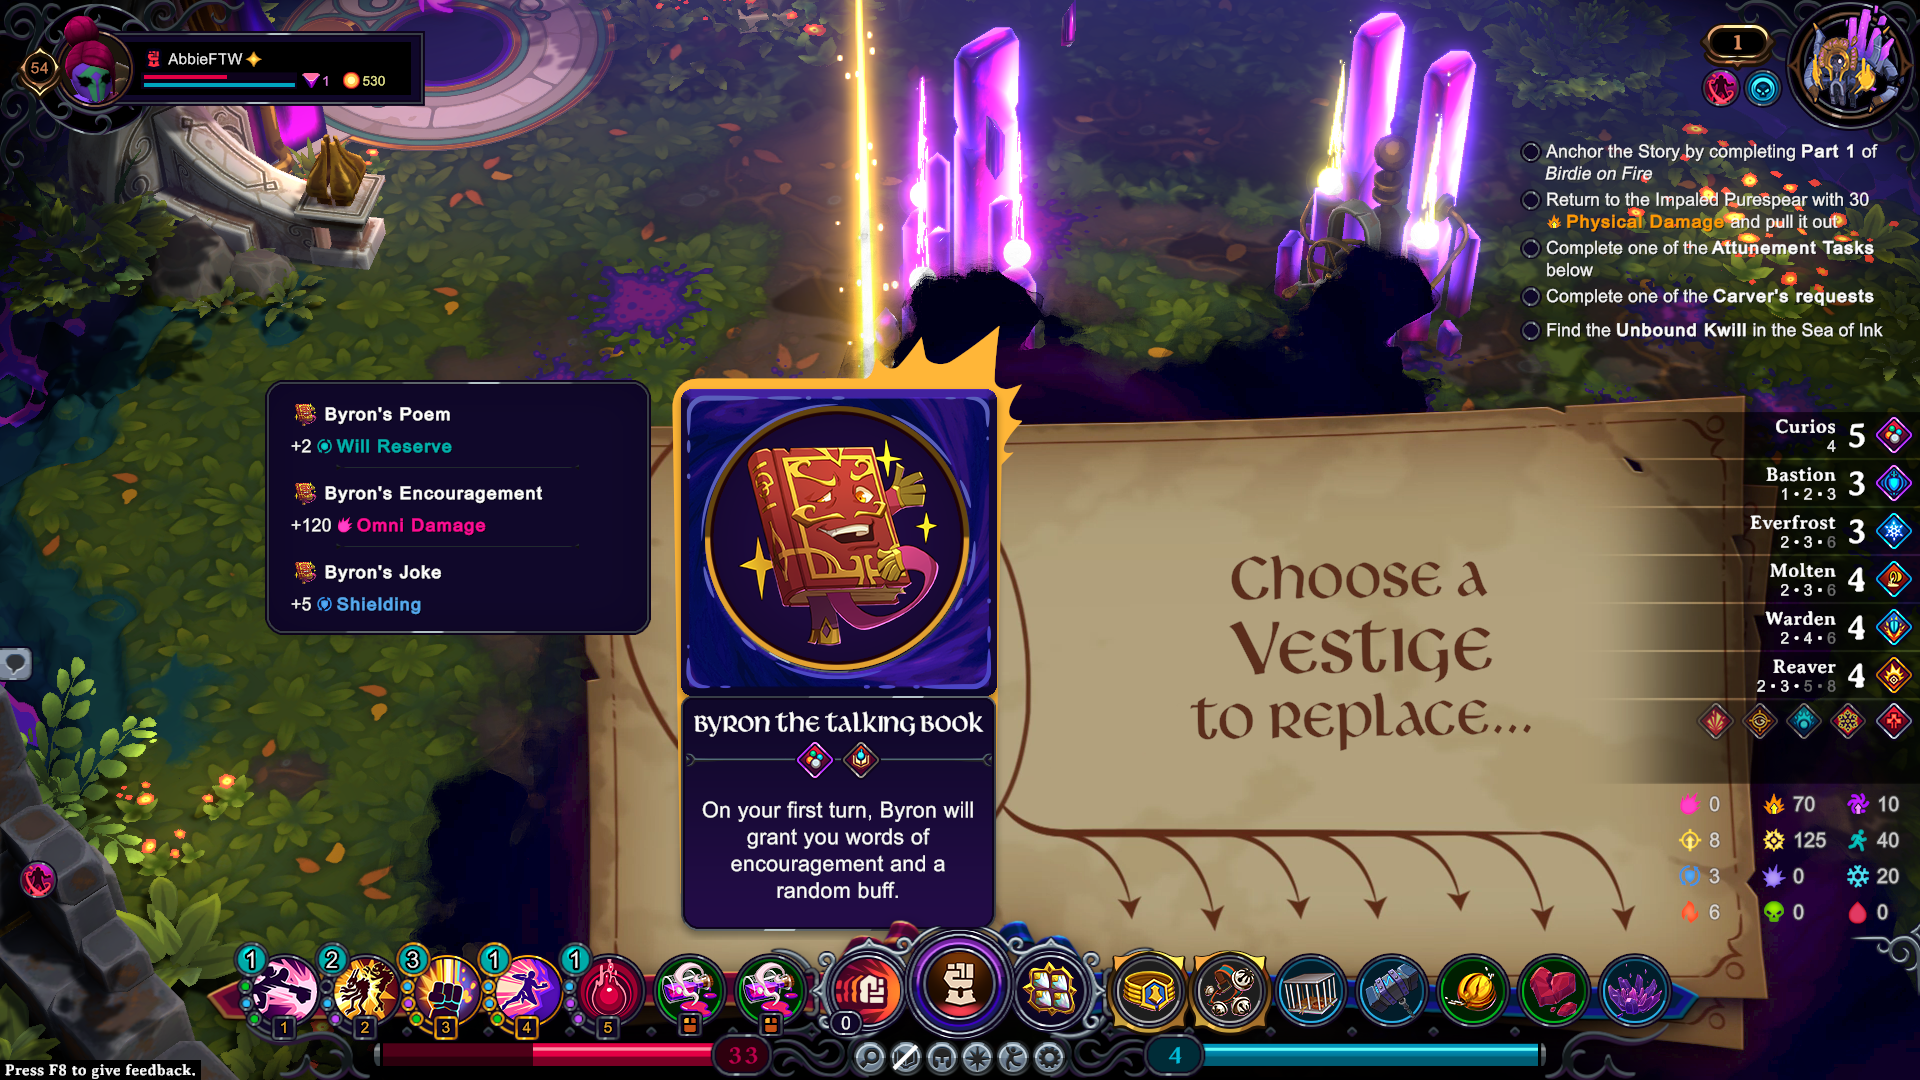 Una pantalla que le pide al jugador que elija qué vestigio reemplazar por uno nuevo en Inkbound.